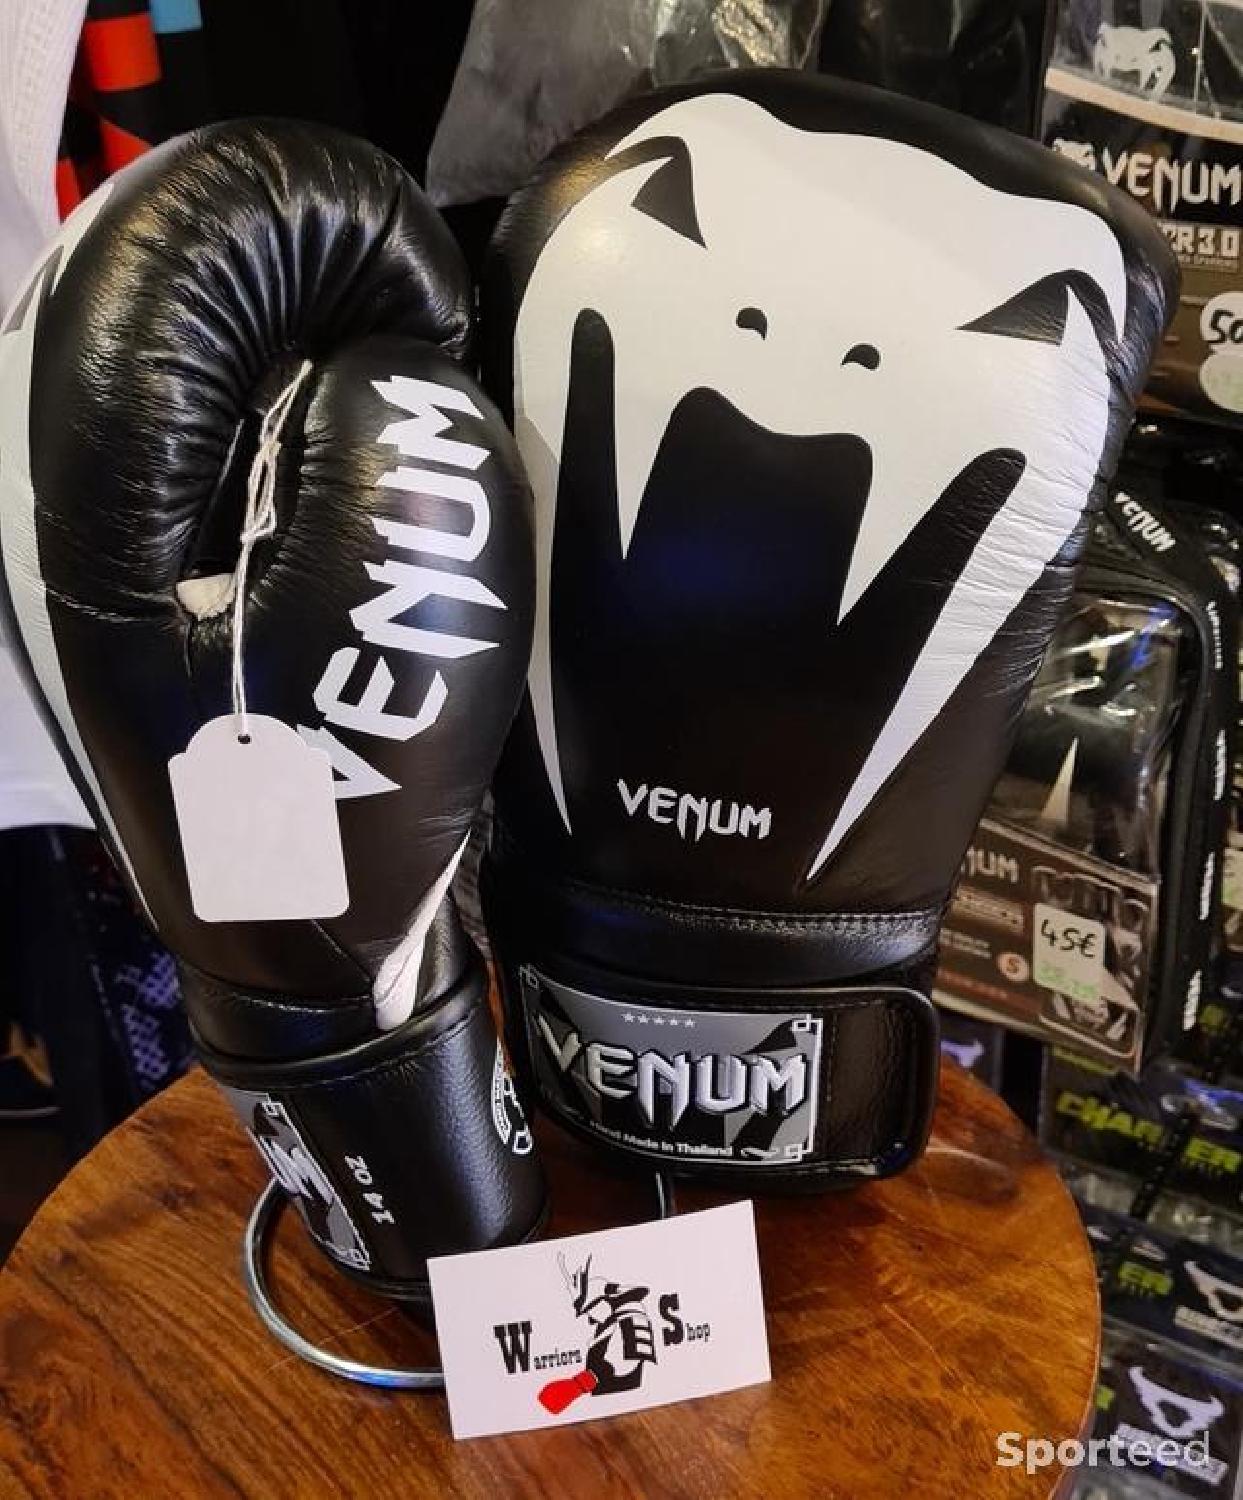 Gants de boxe Venum Giant 3.0 - Cuir Nappa - Noir/Noir